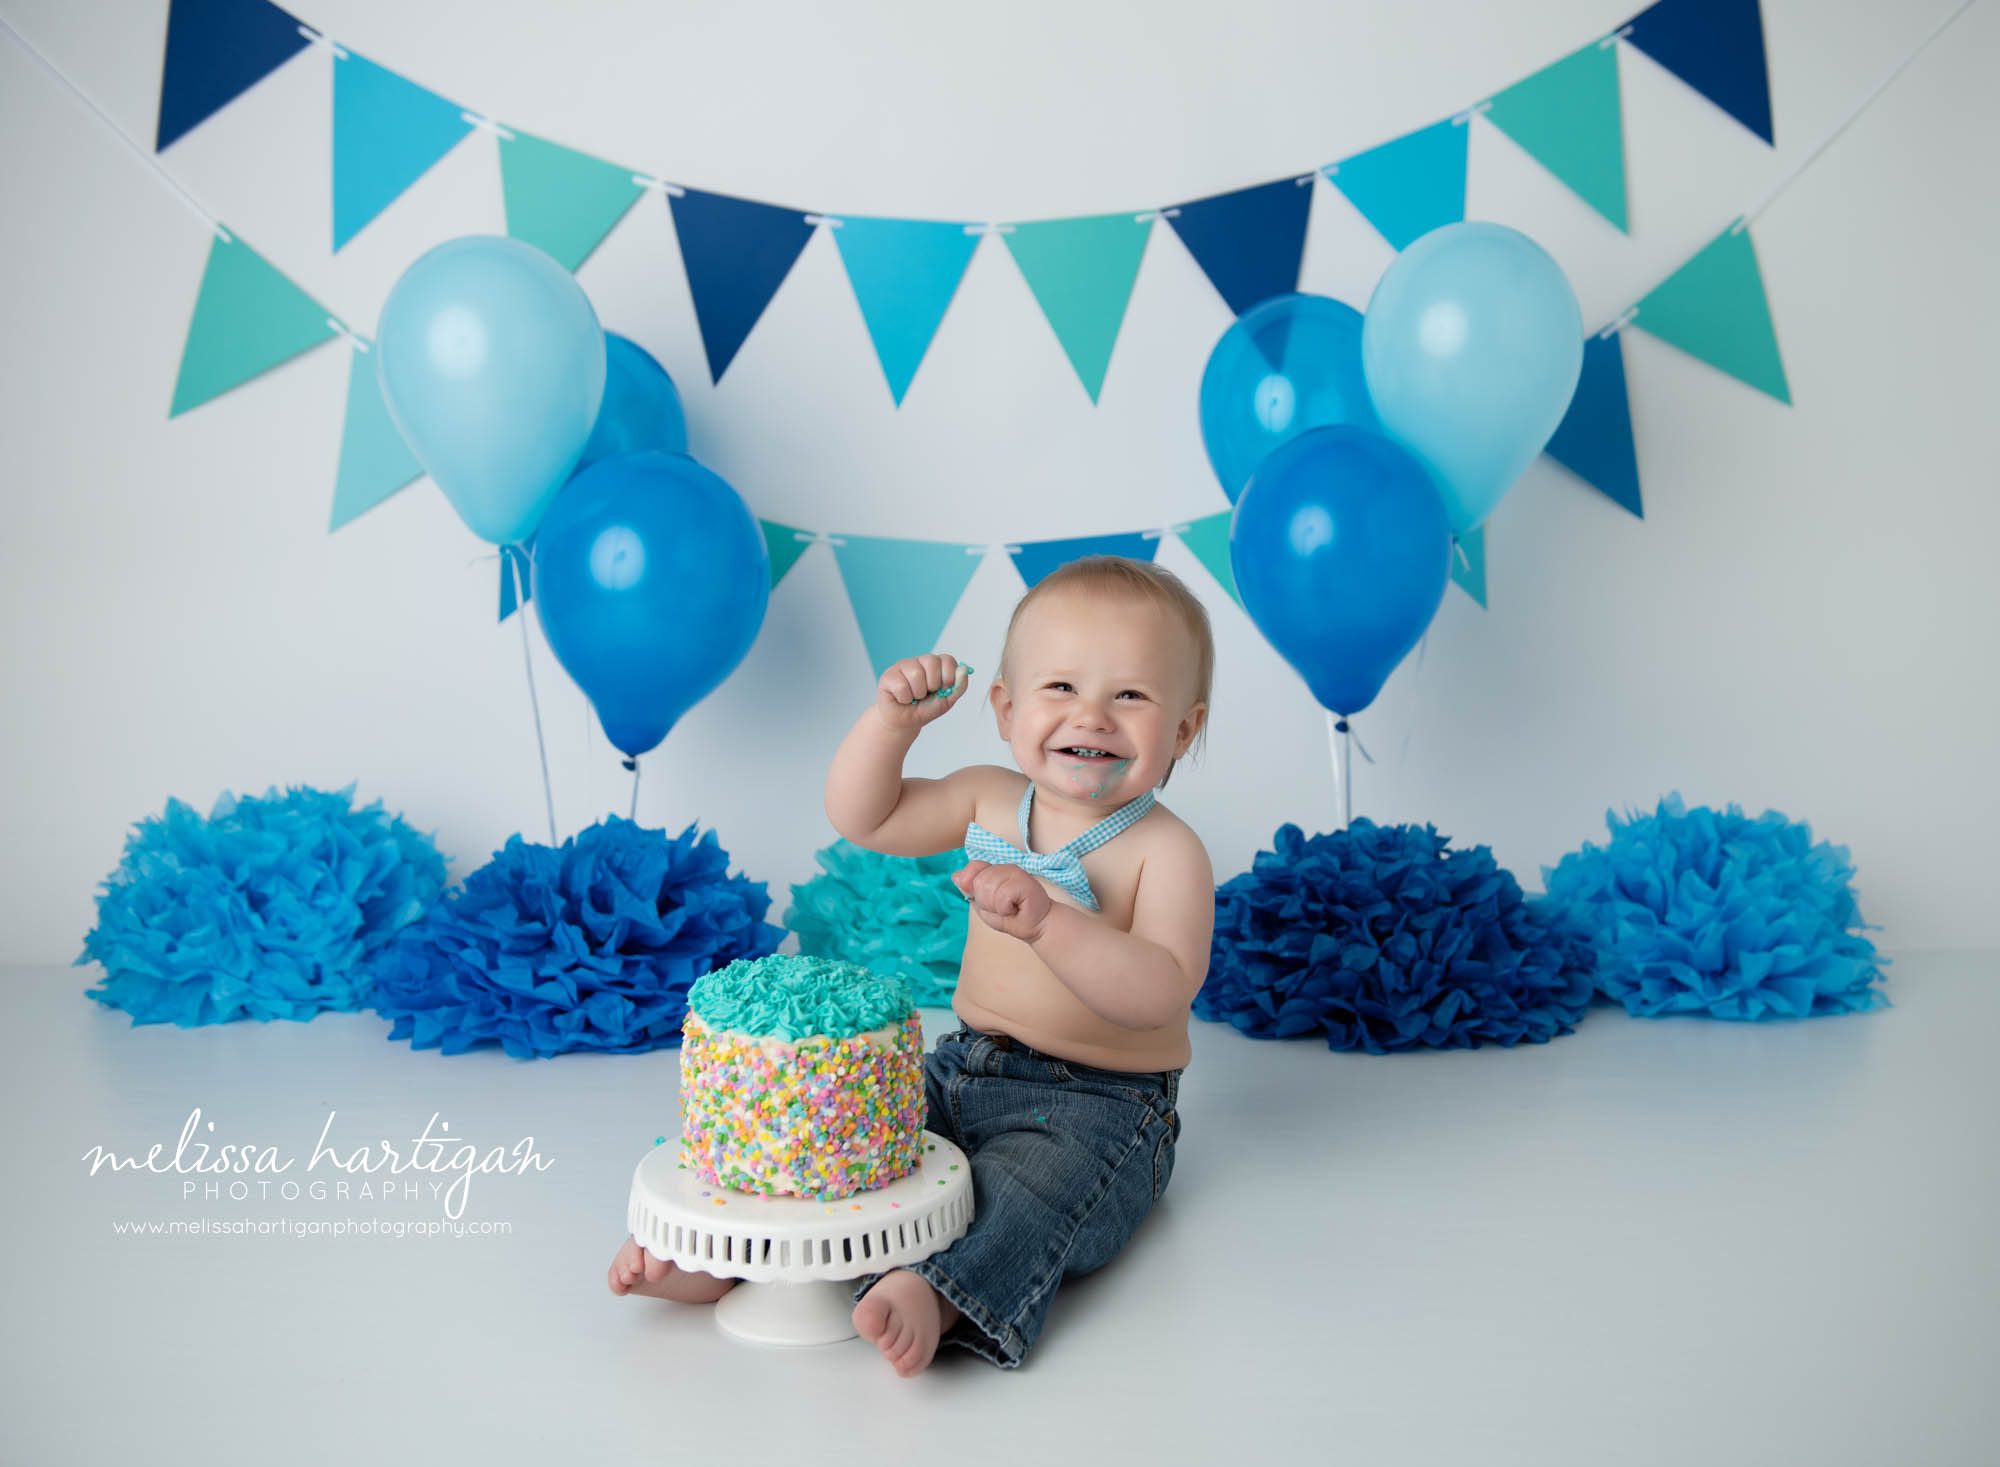 cake smash photo session with baby boy celebrating one year milestone